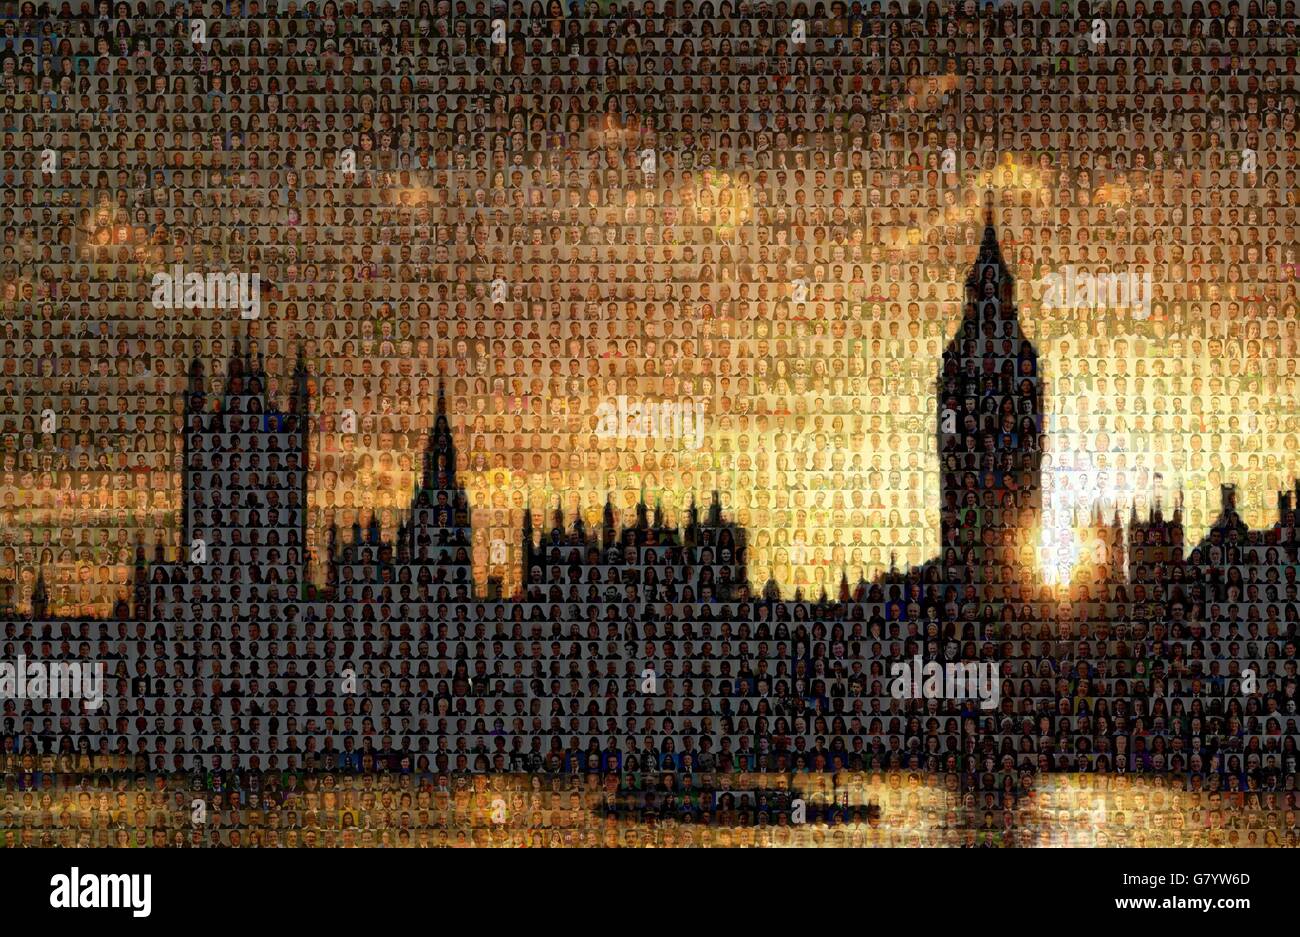 Questo mosaico generato dal computer mostra più di 3,100 candidati alle elezioni generali di giovedì, che sono stati oggetto di un'immagine delle Camere del Parlamento. Foto Stock